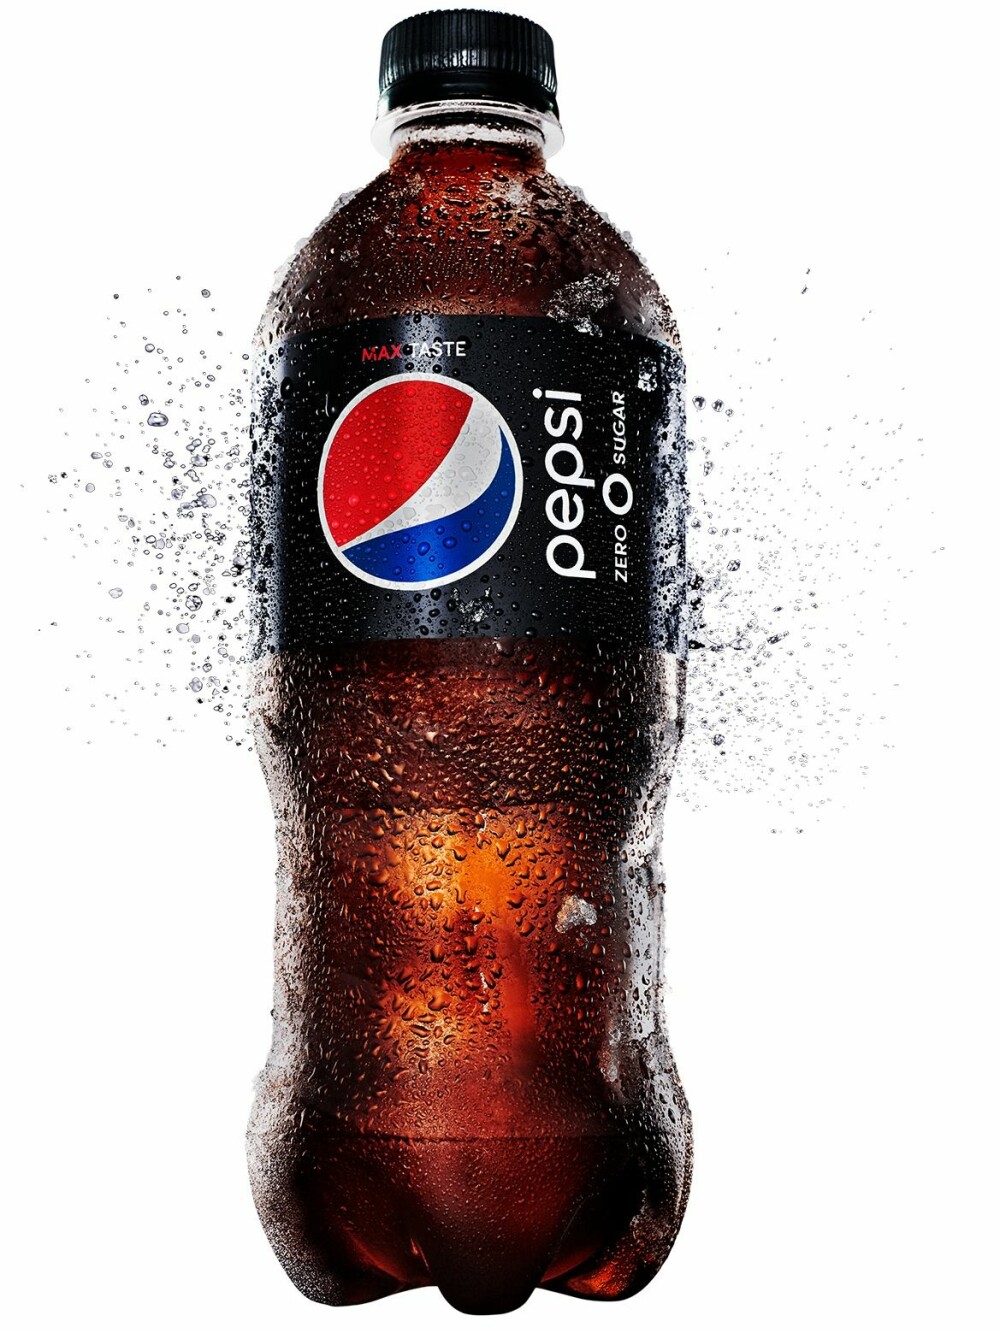 Pepsi Max!